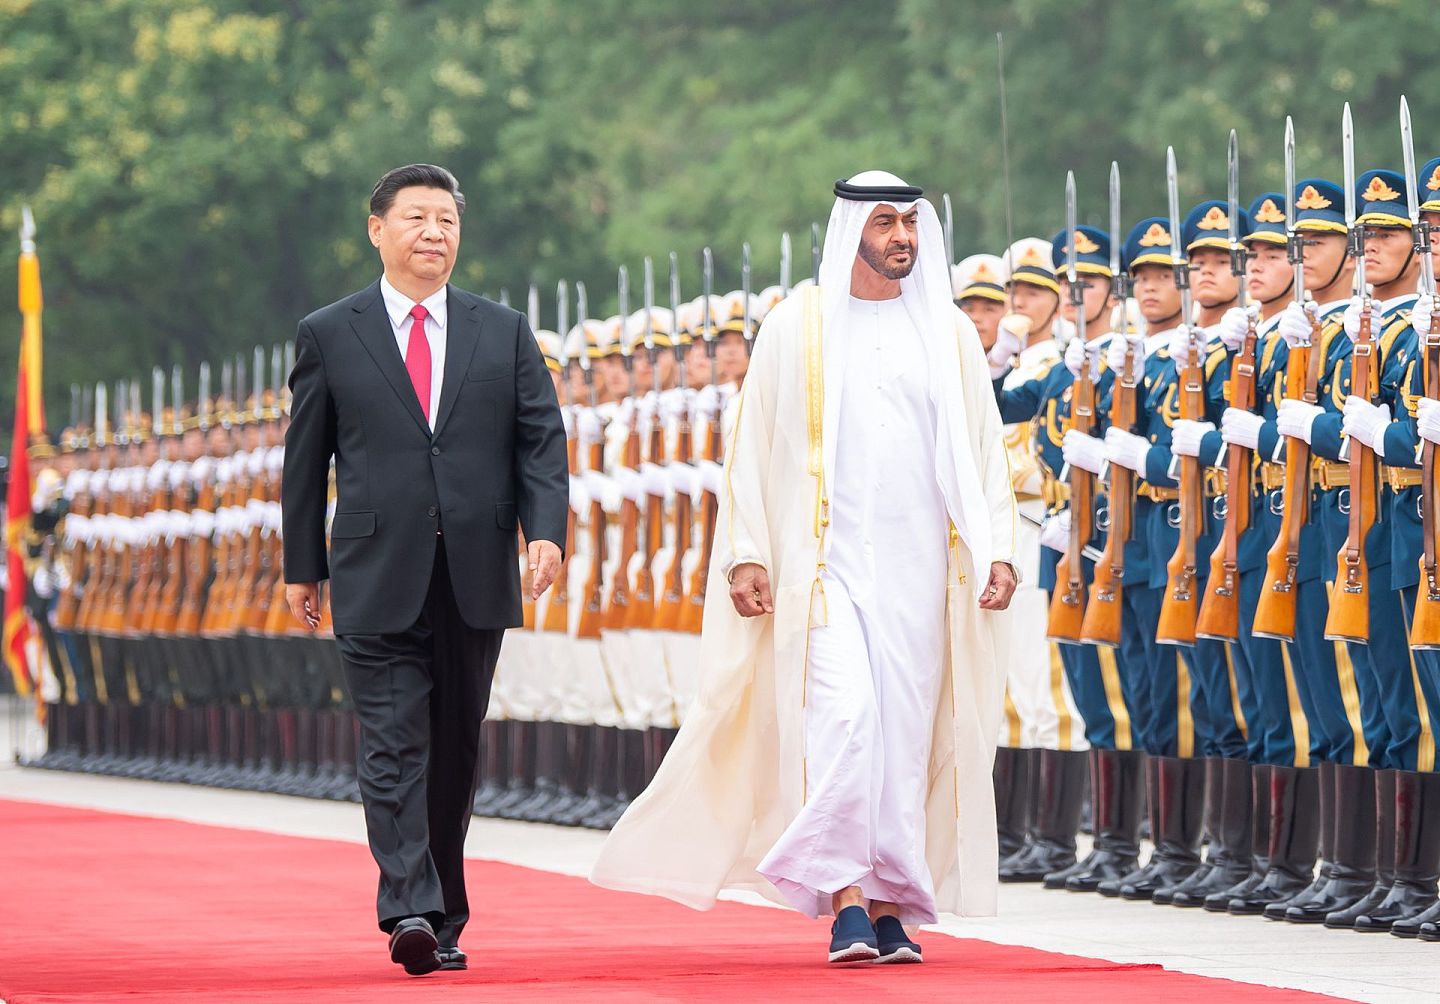 阿联酋长年是沙特附庸。图为阿联酋的阿布扎比王储穆罕默德·本·扎耶德·阿勒纳哈扬（Mohammed bin Zayed Al Nahyan）访问中国之景。（新华社）